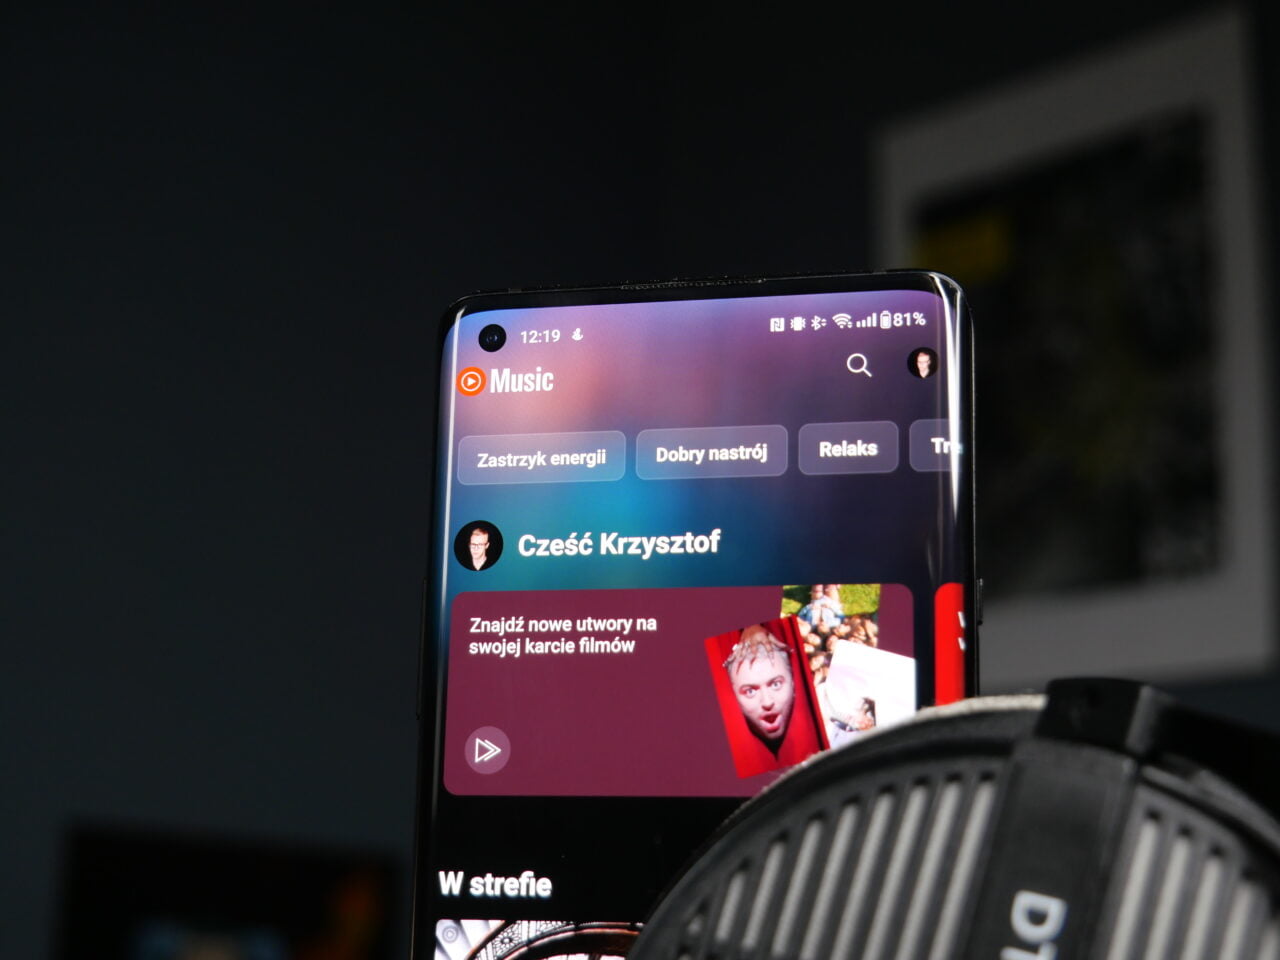 Smartfon wyświetlający interfejs aplikacji muzycznej z grafiką użytkownika i opcjami wyboru playlisty, ustawiony na biurku przed nieostrym tłem.